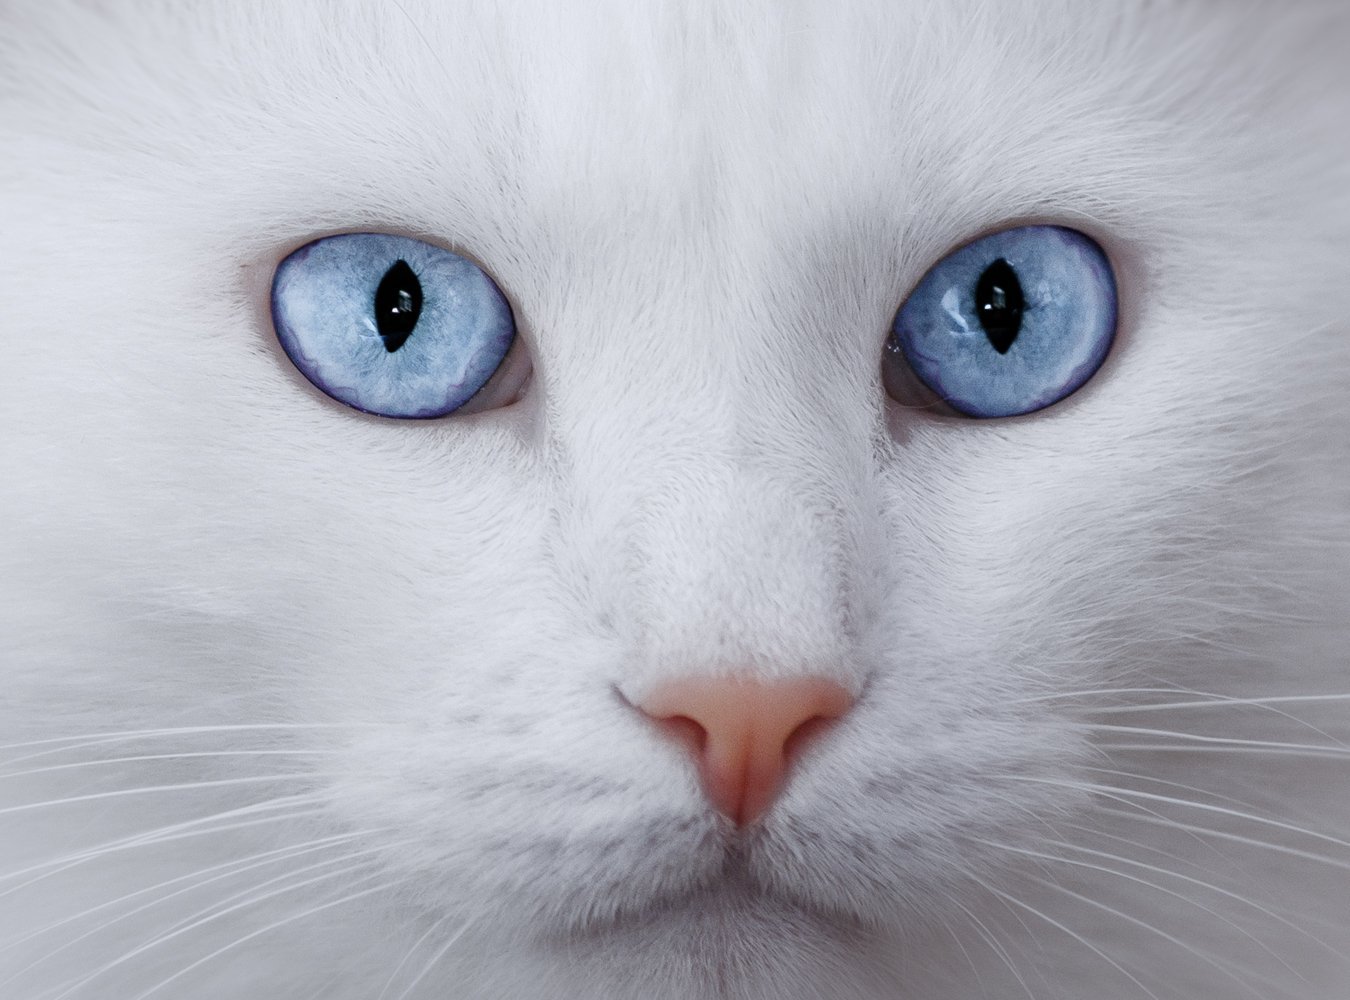 Породы котов с голубыми глазами. Британская шиншилла Коби. Турецкая ангора разноглазая. Шотландская вислоухая кошка альбинос. Охос азулес вислоухая.